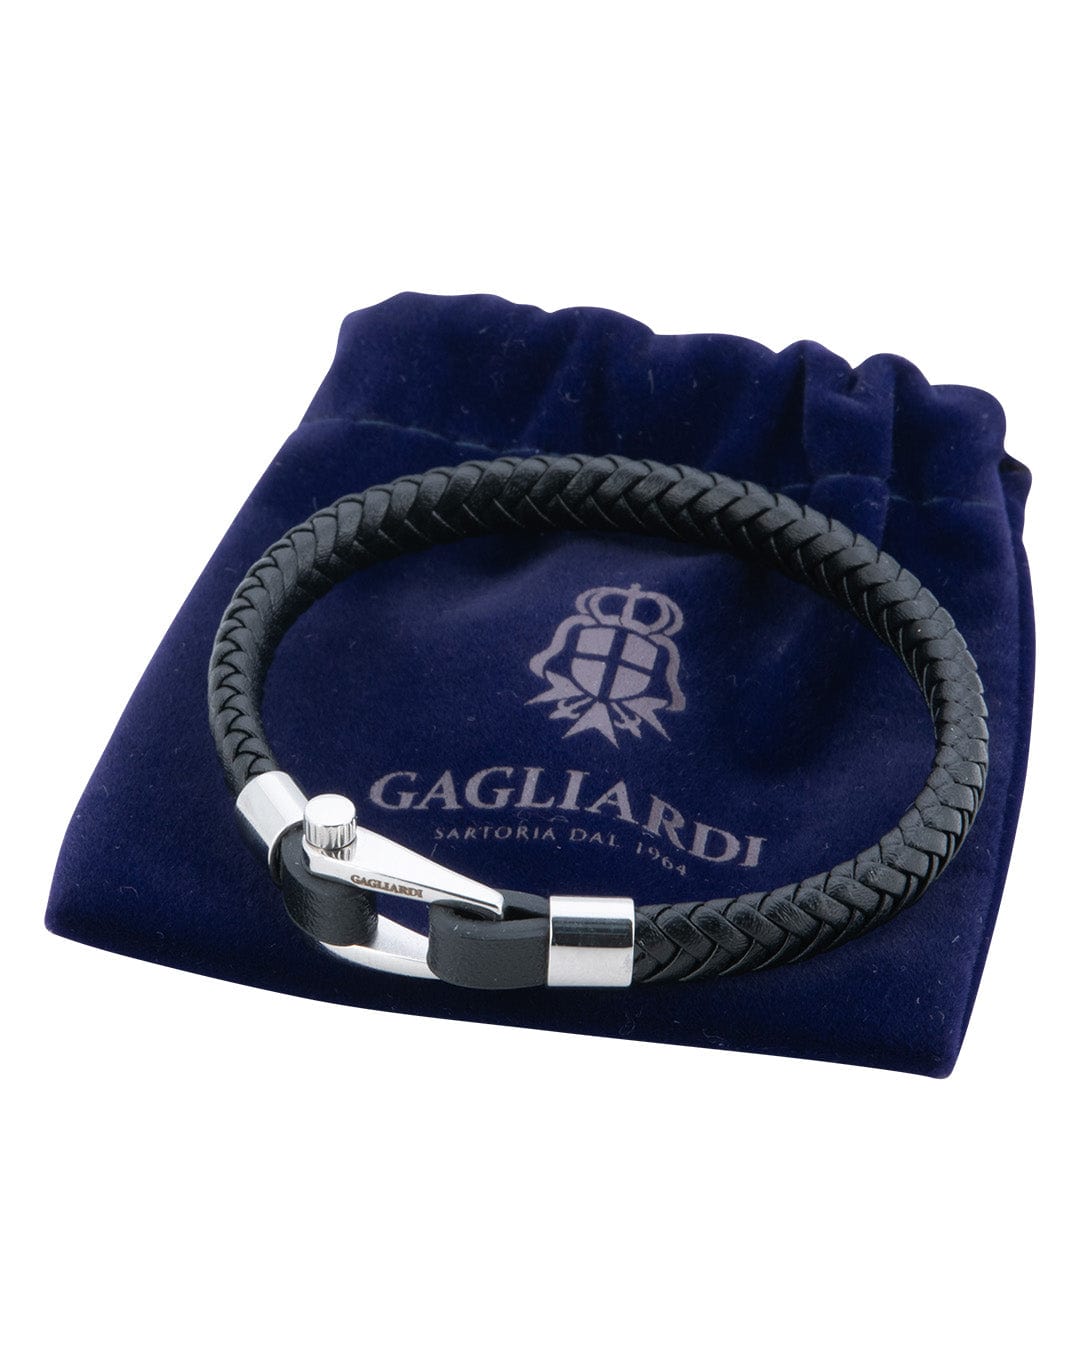 Gagliardi Bracelets Gagliardi Black Braided Leather Bracelet With Polished Steel Screw Clasp